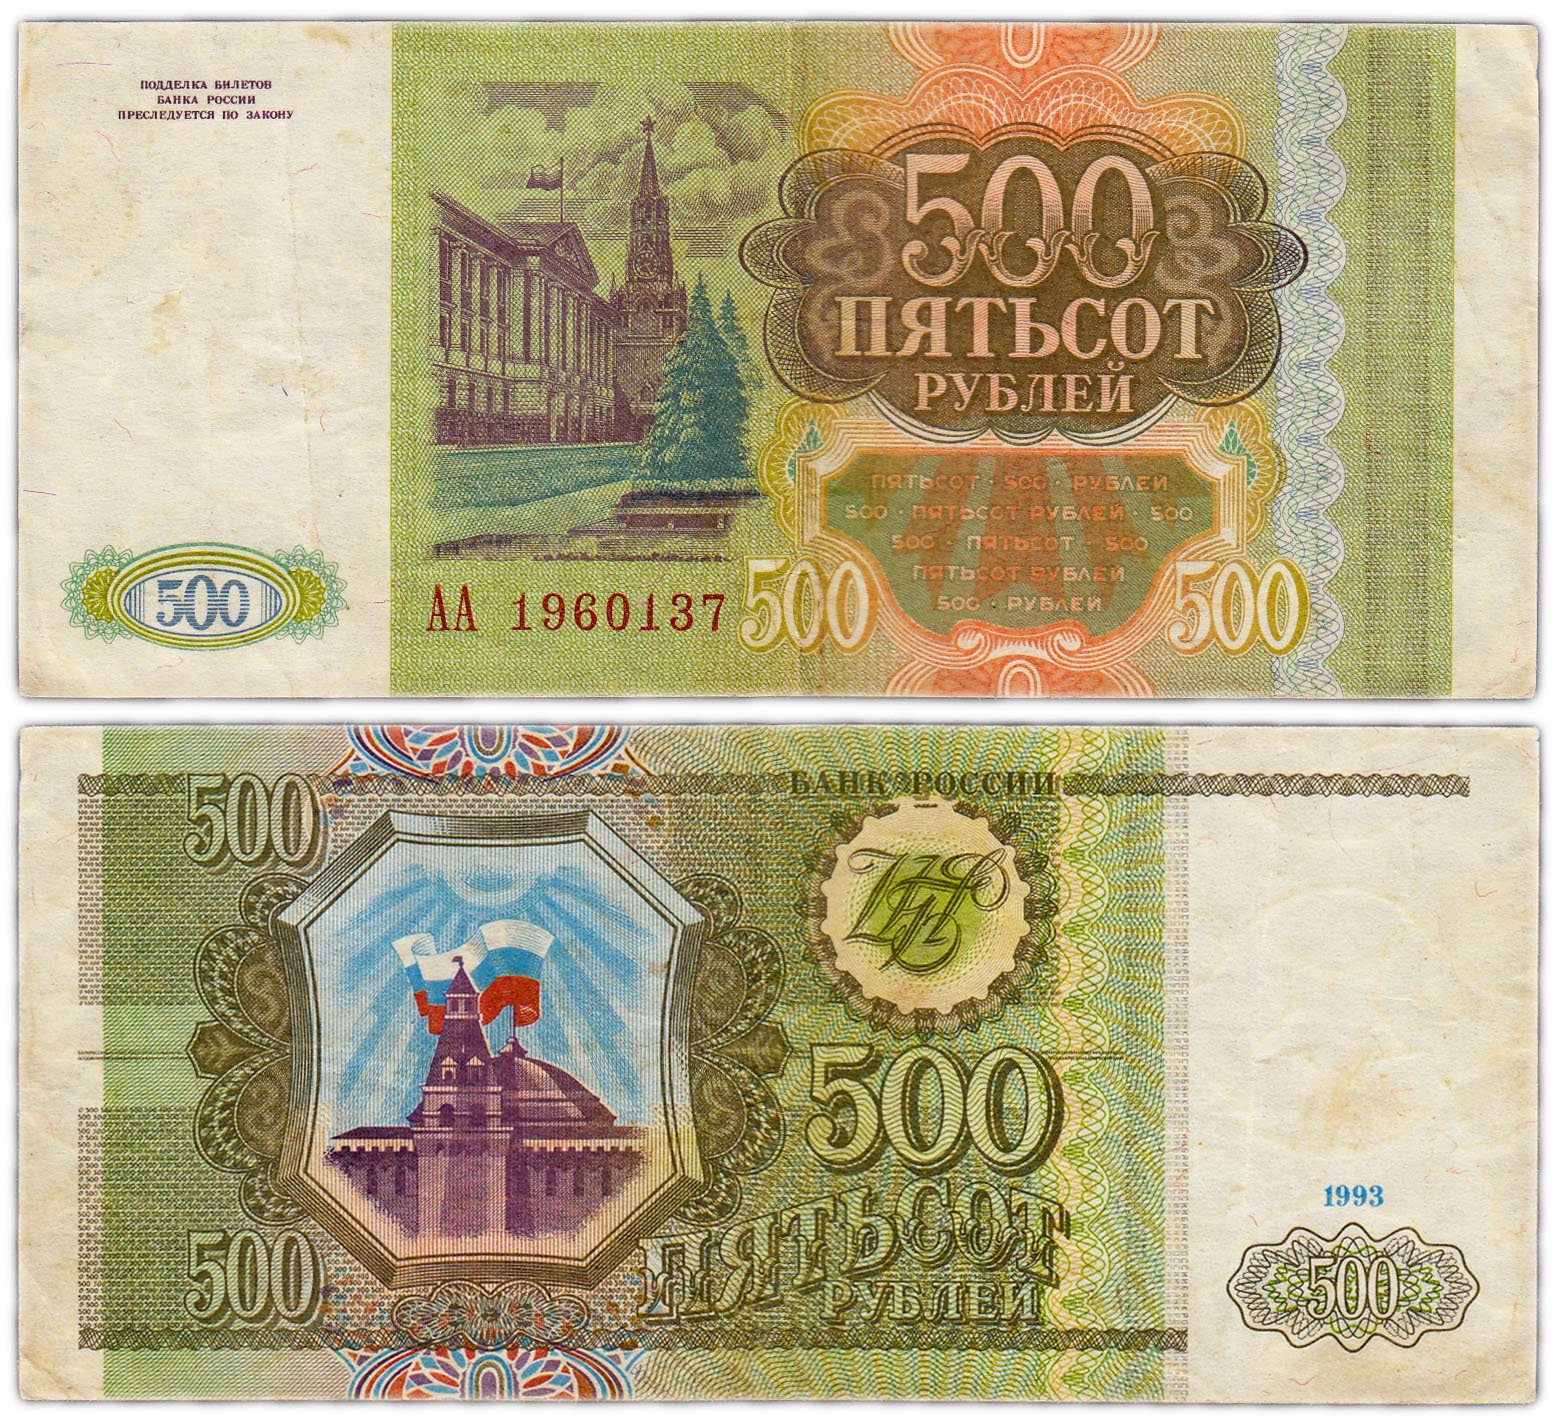 500 в русские рубли. 500 Рублей 1993. Купюра 500 рублей 1993 года. Банкнота 500 рублей 1993. Купюра 500 рублей 1993.